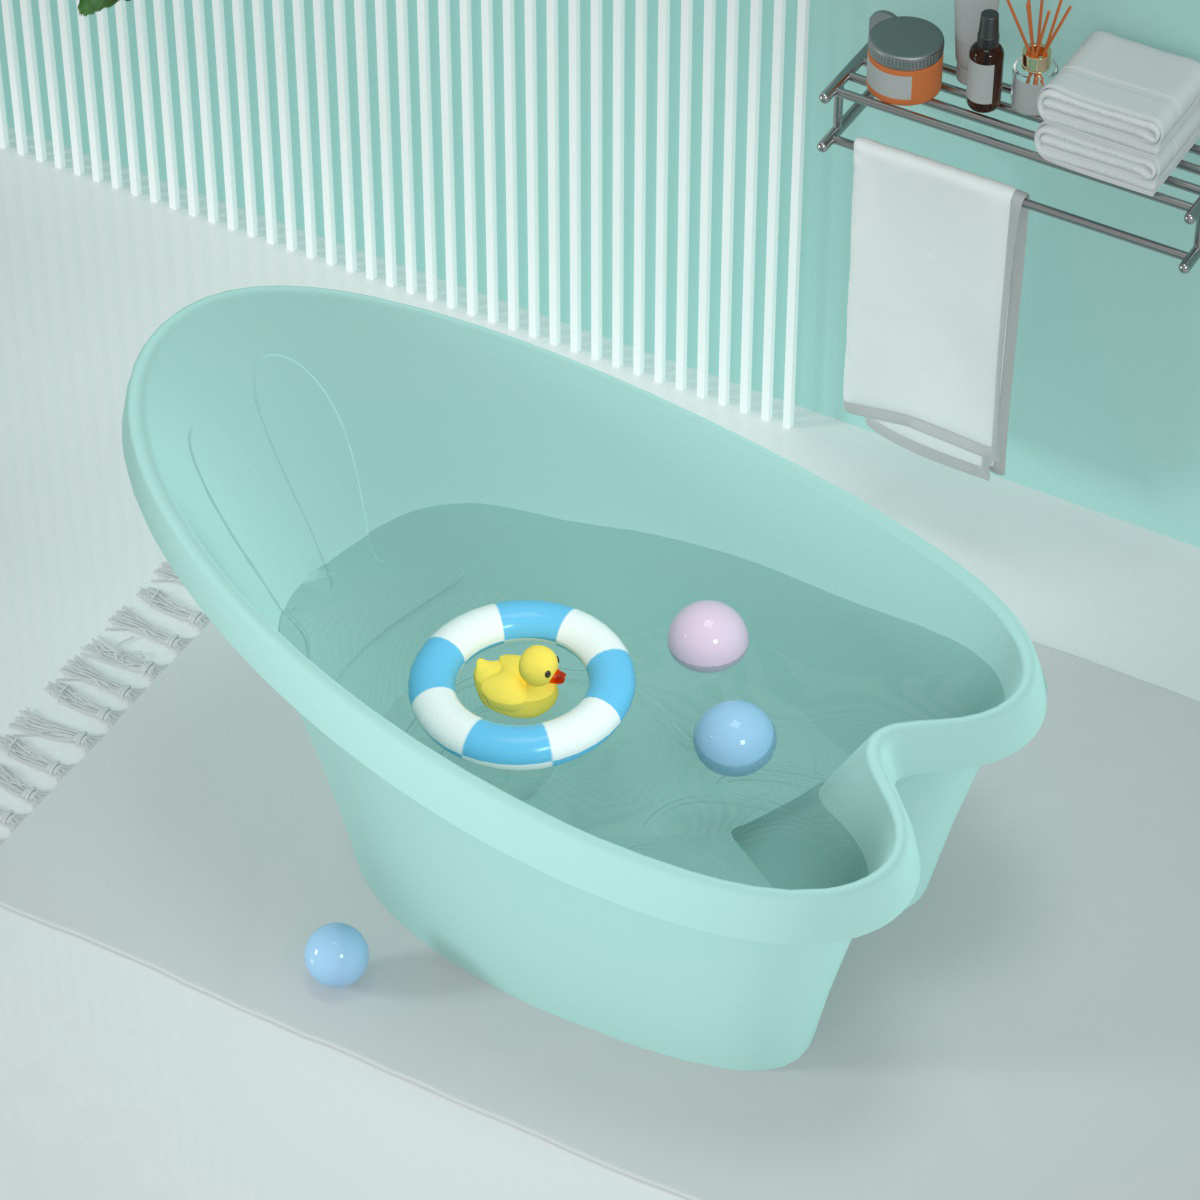 High Quality Bunny Design Baby Bathtub Bathroom Kids Bathtub Home Usage Infant Toddler Bath Tub